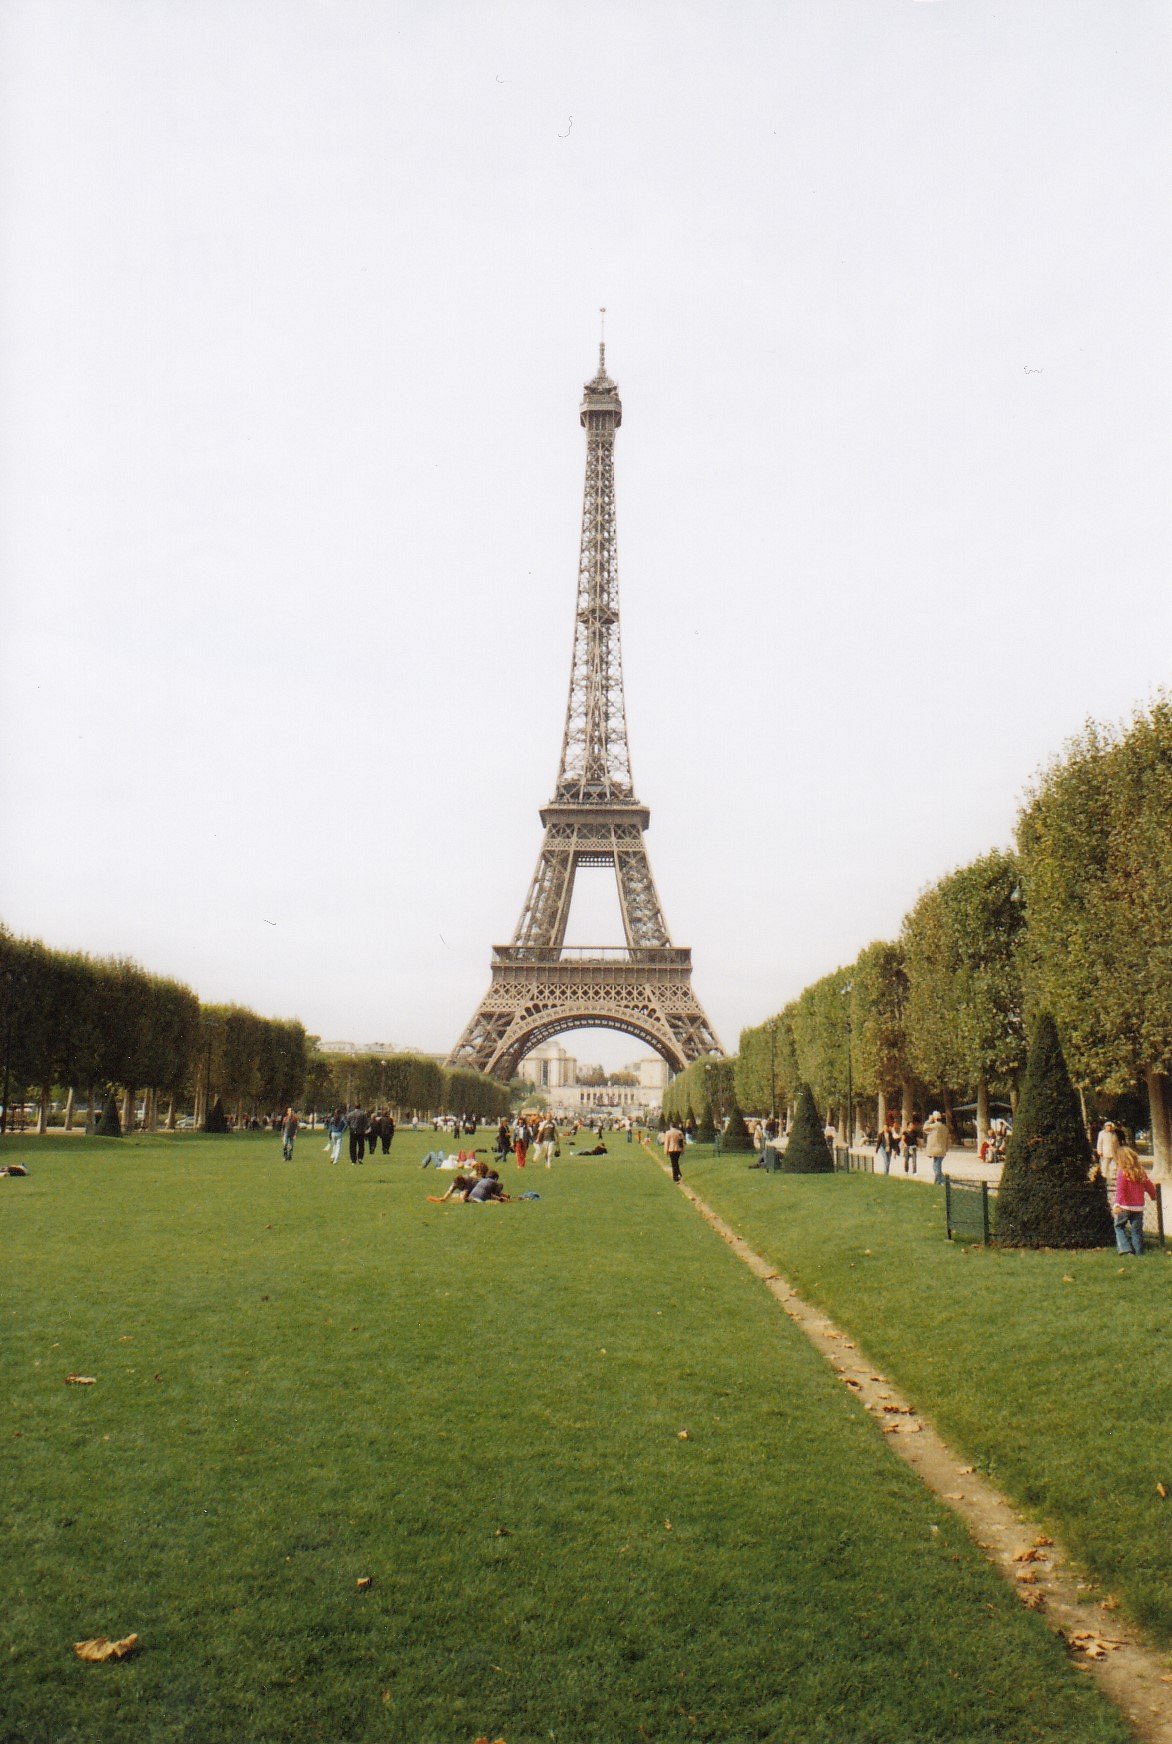 Nếu bạn đang có kế hoạch du lịch Pháp, thì đây là một bức ảnh mà bạn không thể bỏ qua! Cùng chiêm ngưỡng vẻ đẹp tuyệt vời và sự tinh tế của Tháp Eiffel, để trải nghiệm chuyến đi tuyệt vời nhất!